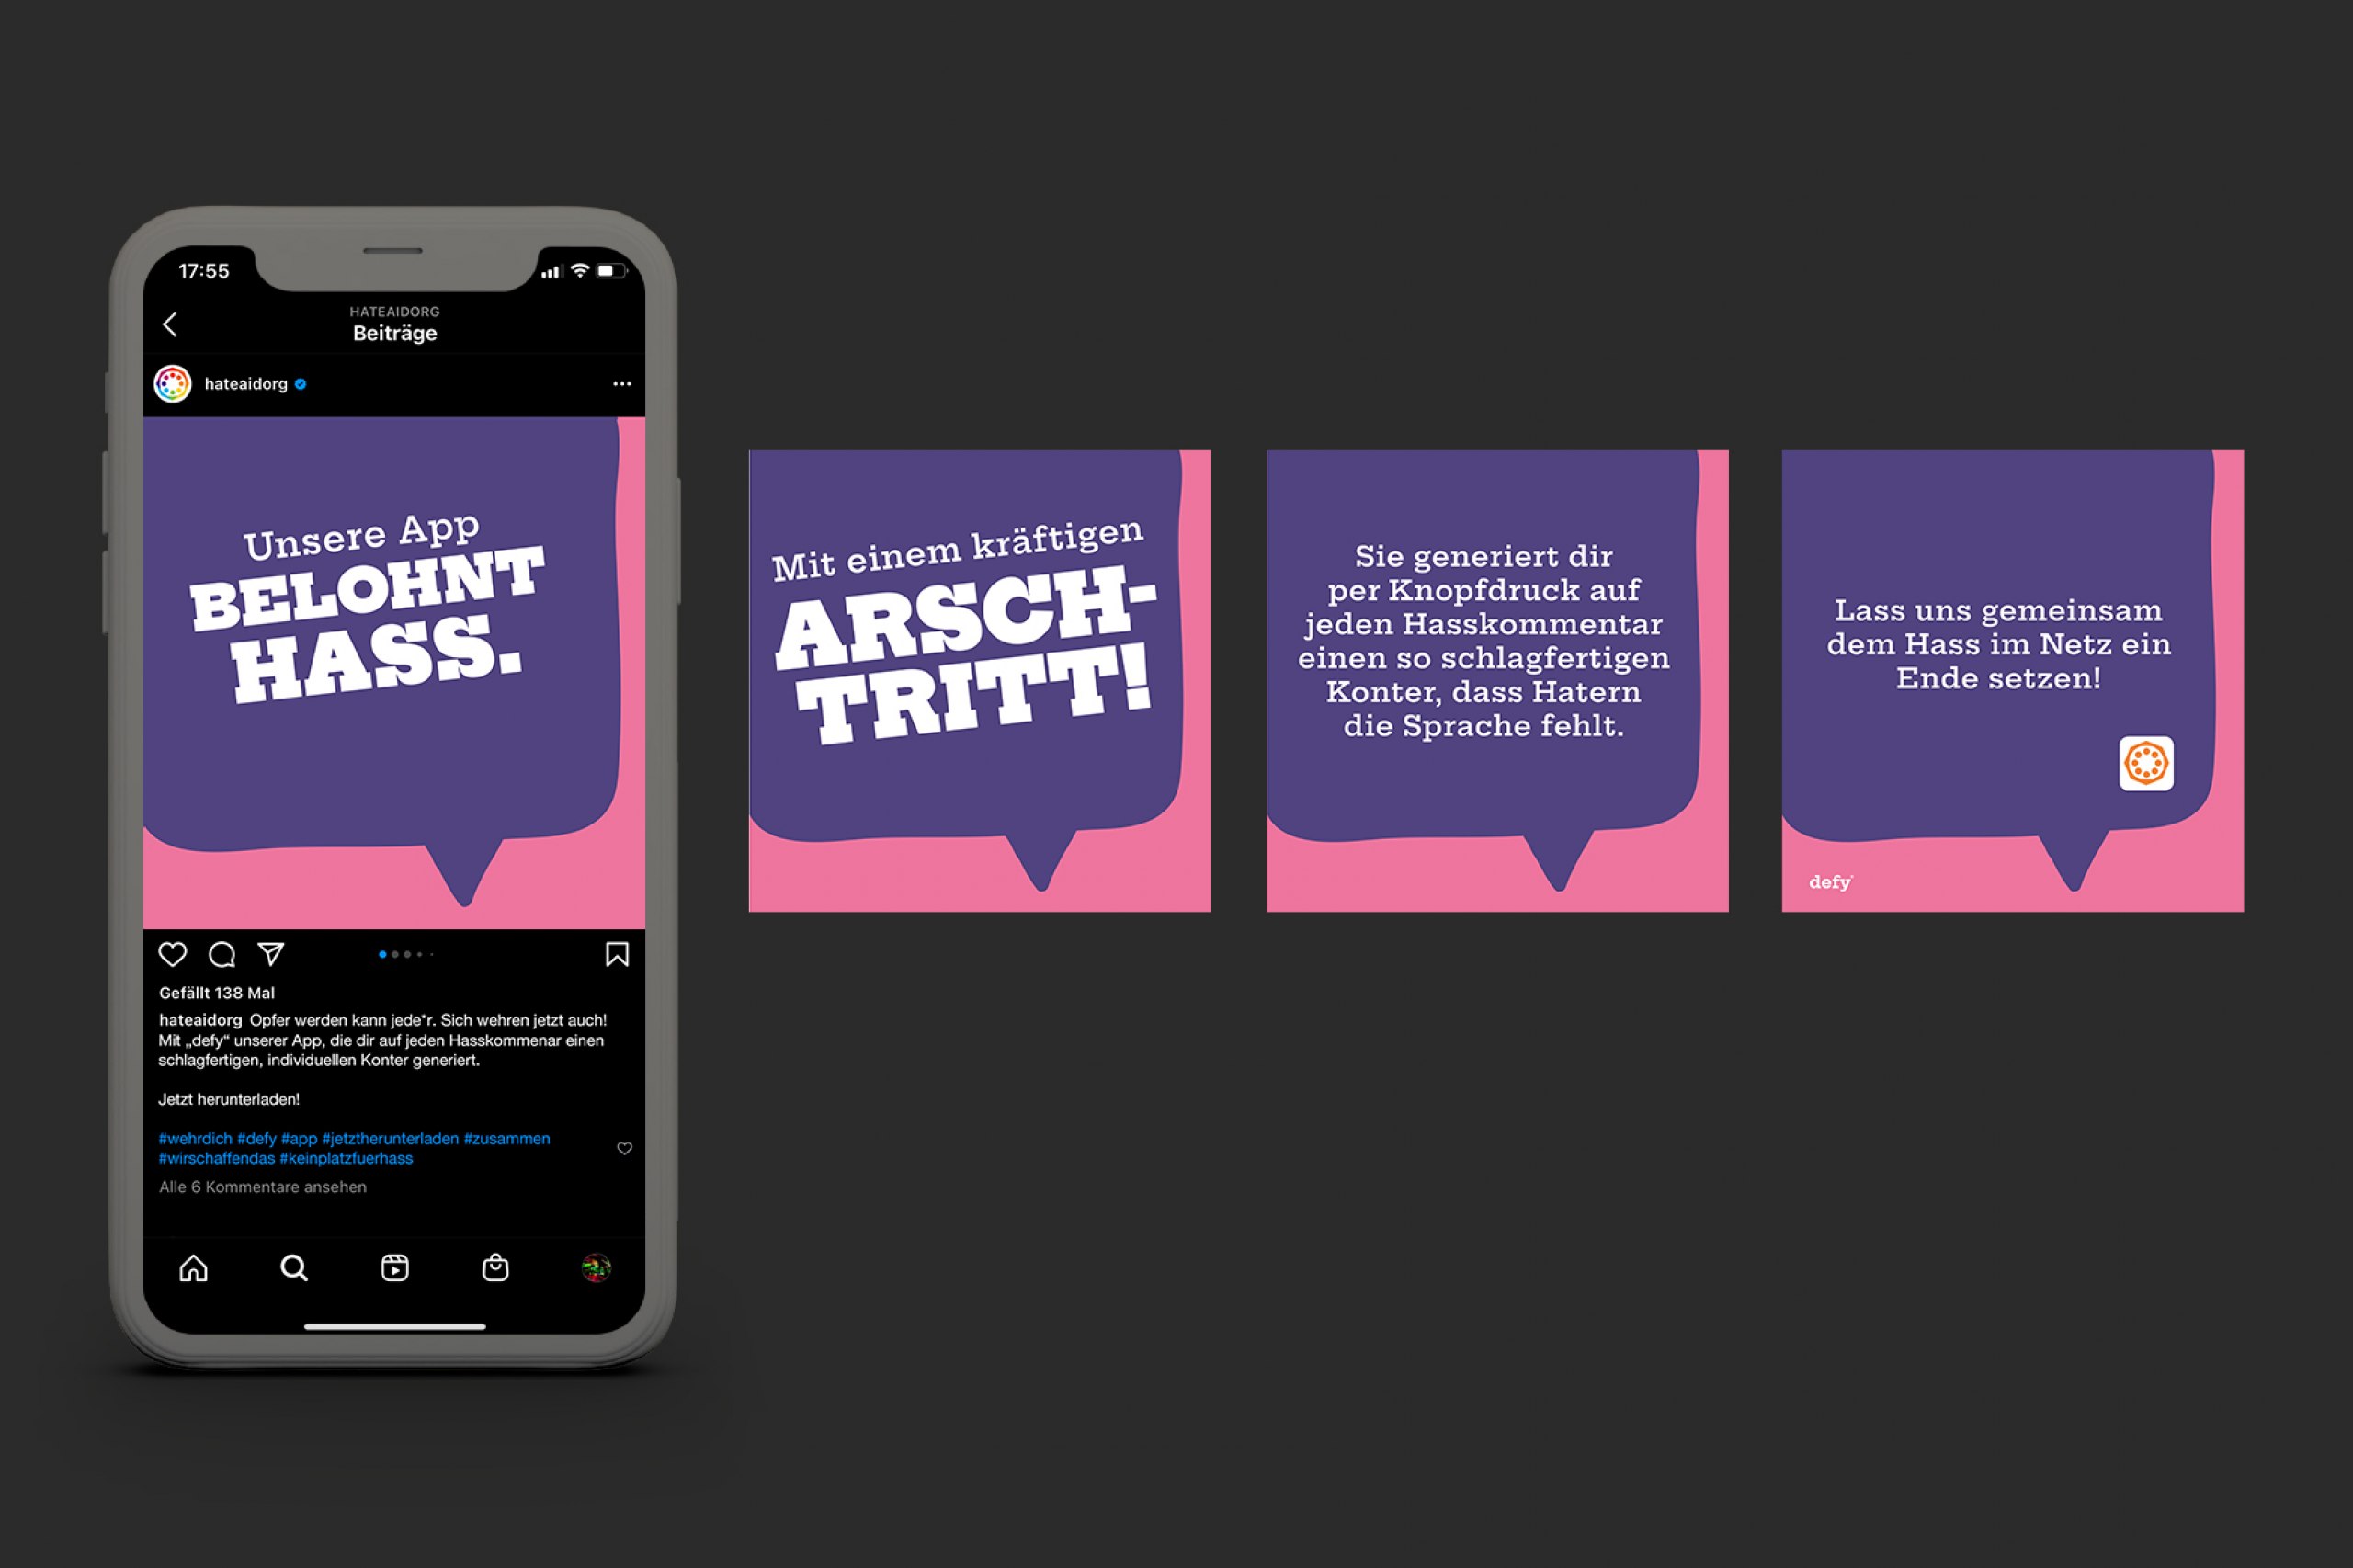 App und Einführungskampagne gegen Hate Speech